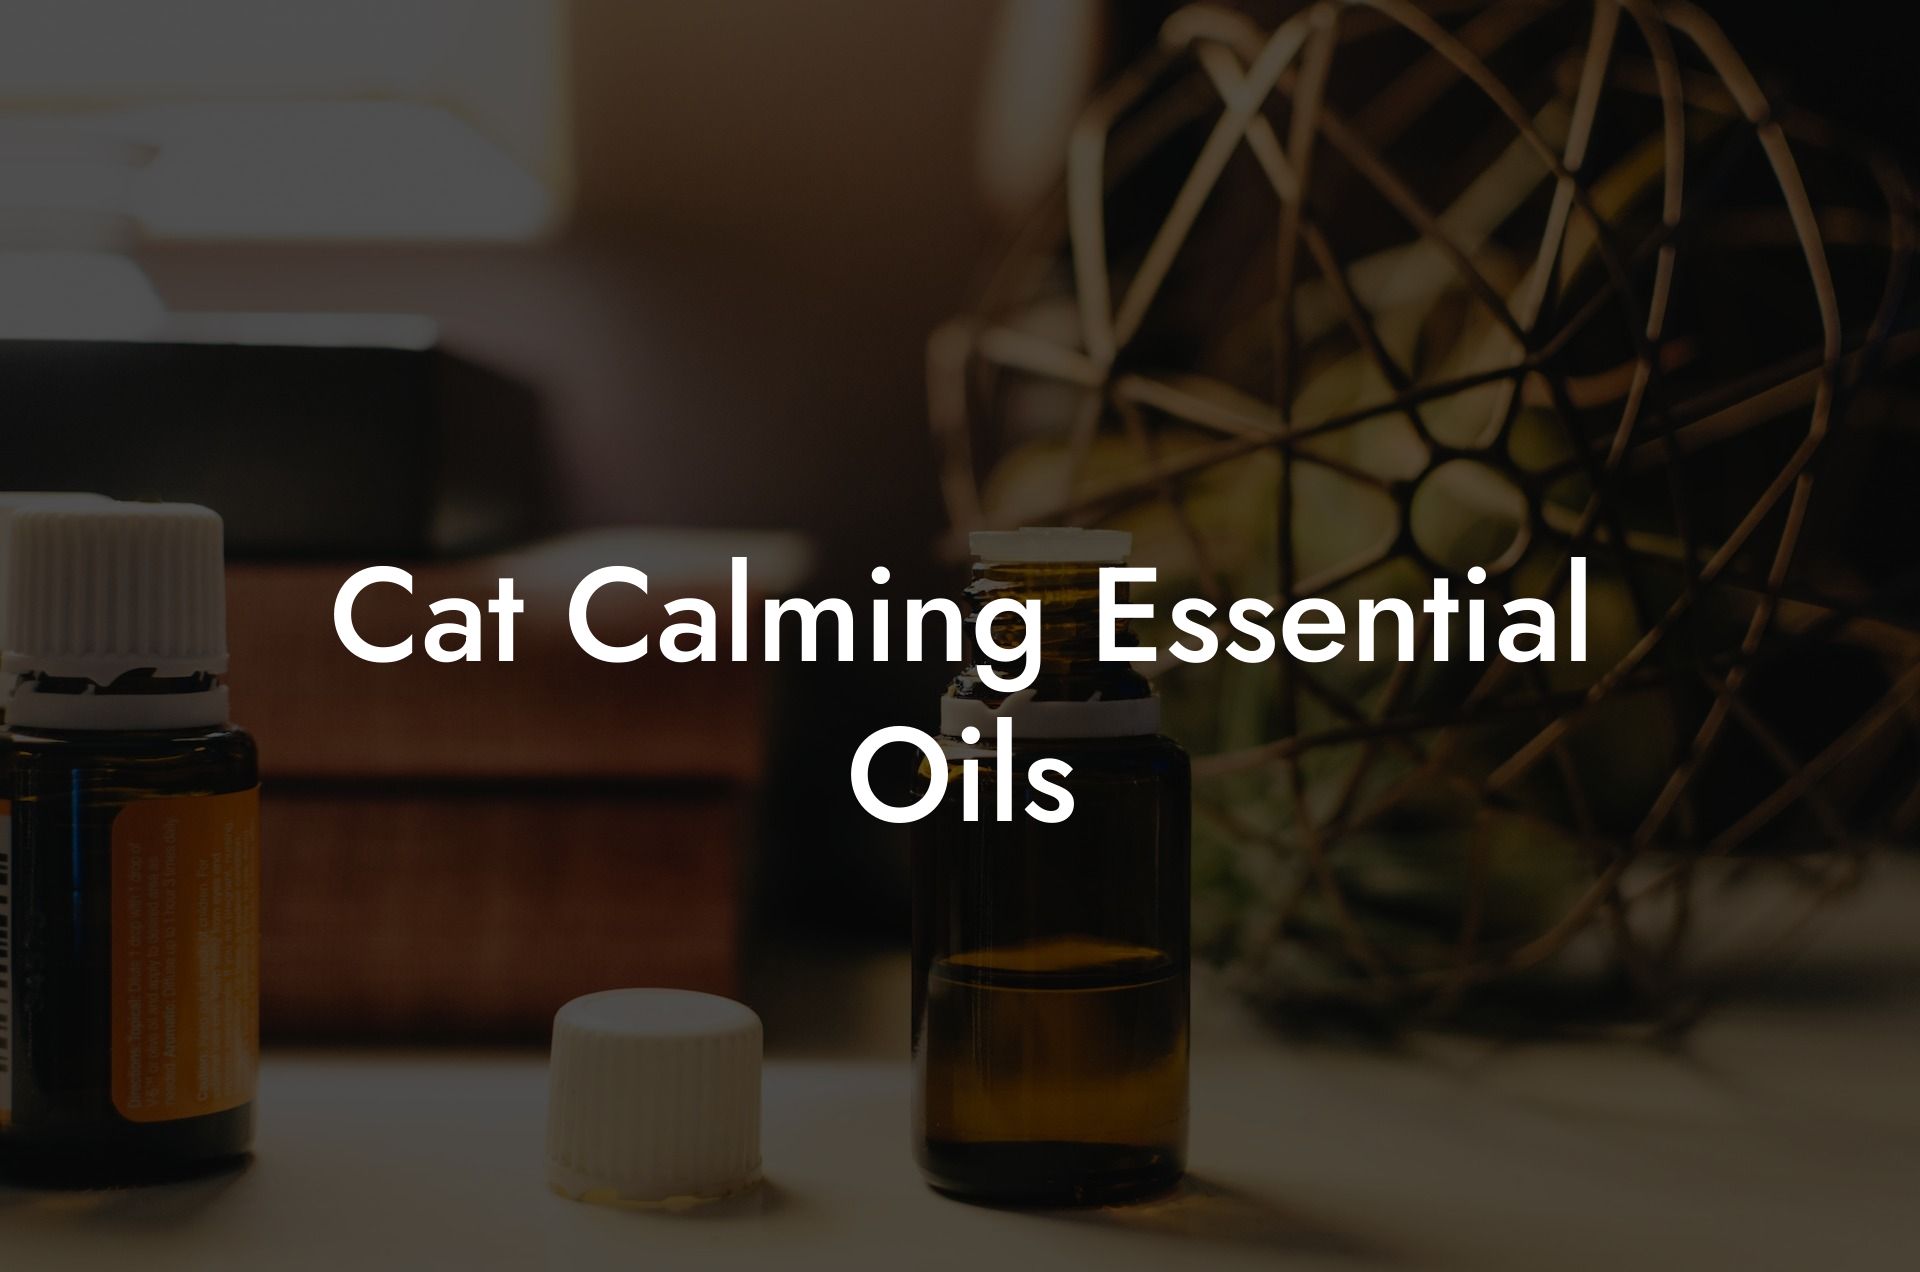 Cat Calming Essential Oils